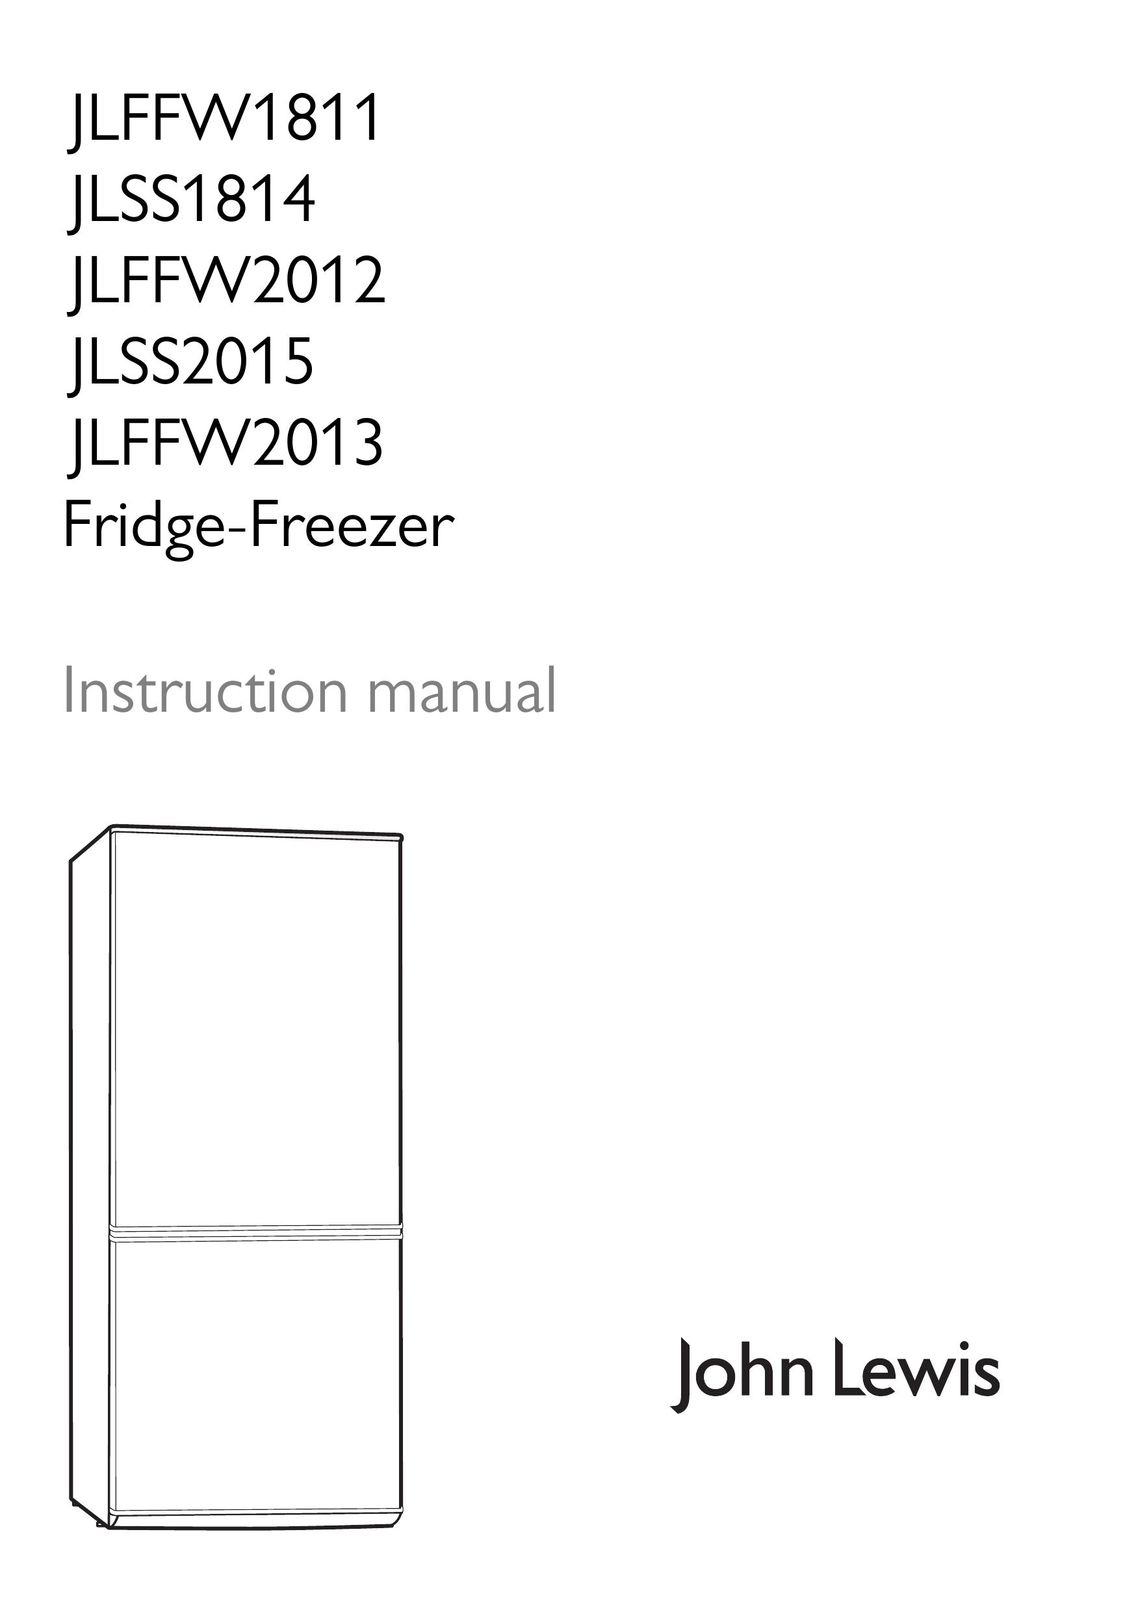 John Lewis JLFFW2012 Freezer User Manual